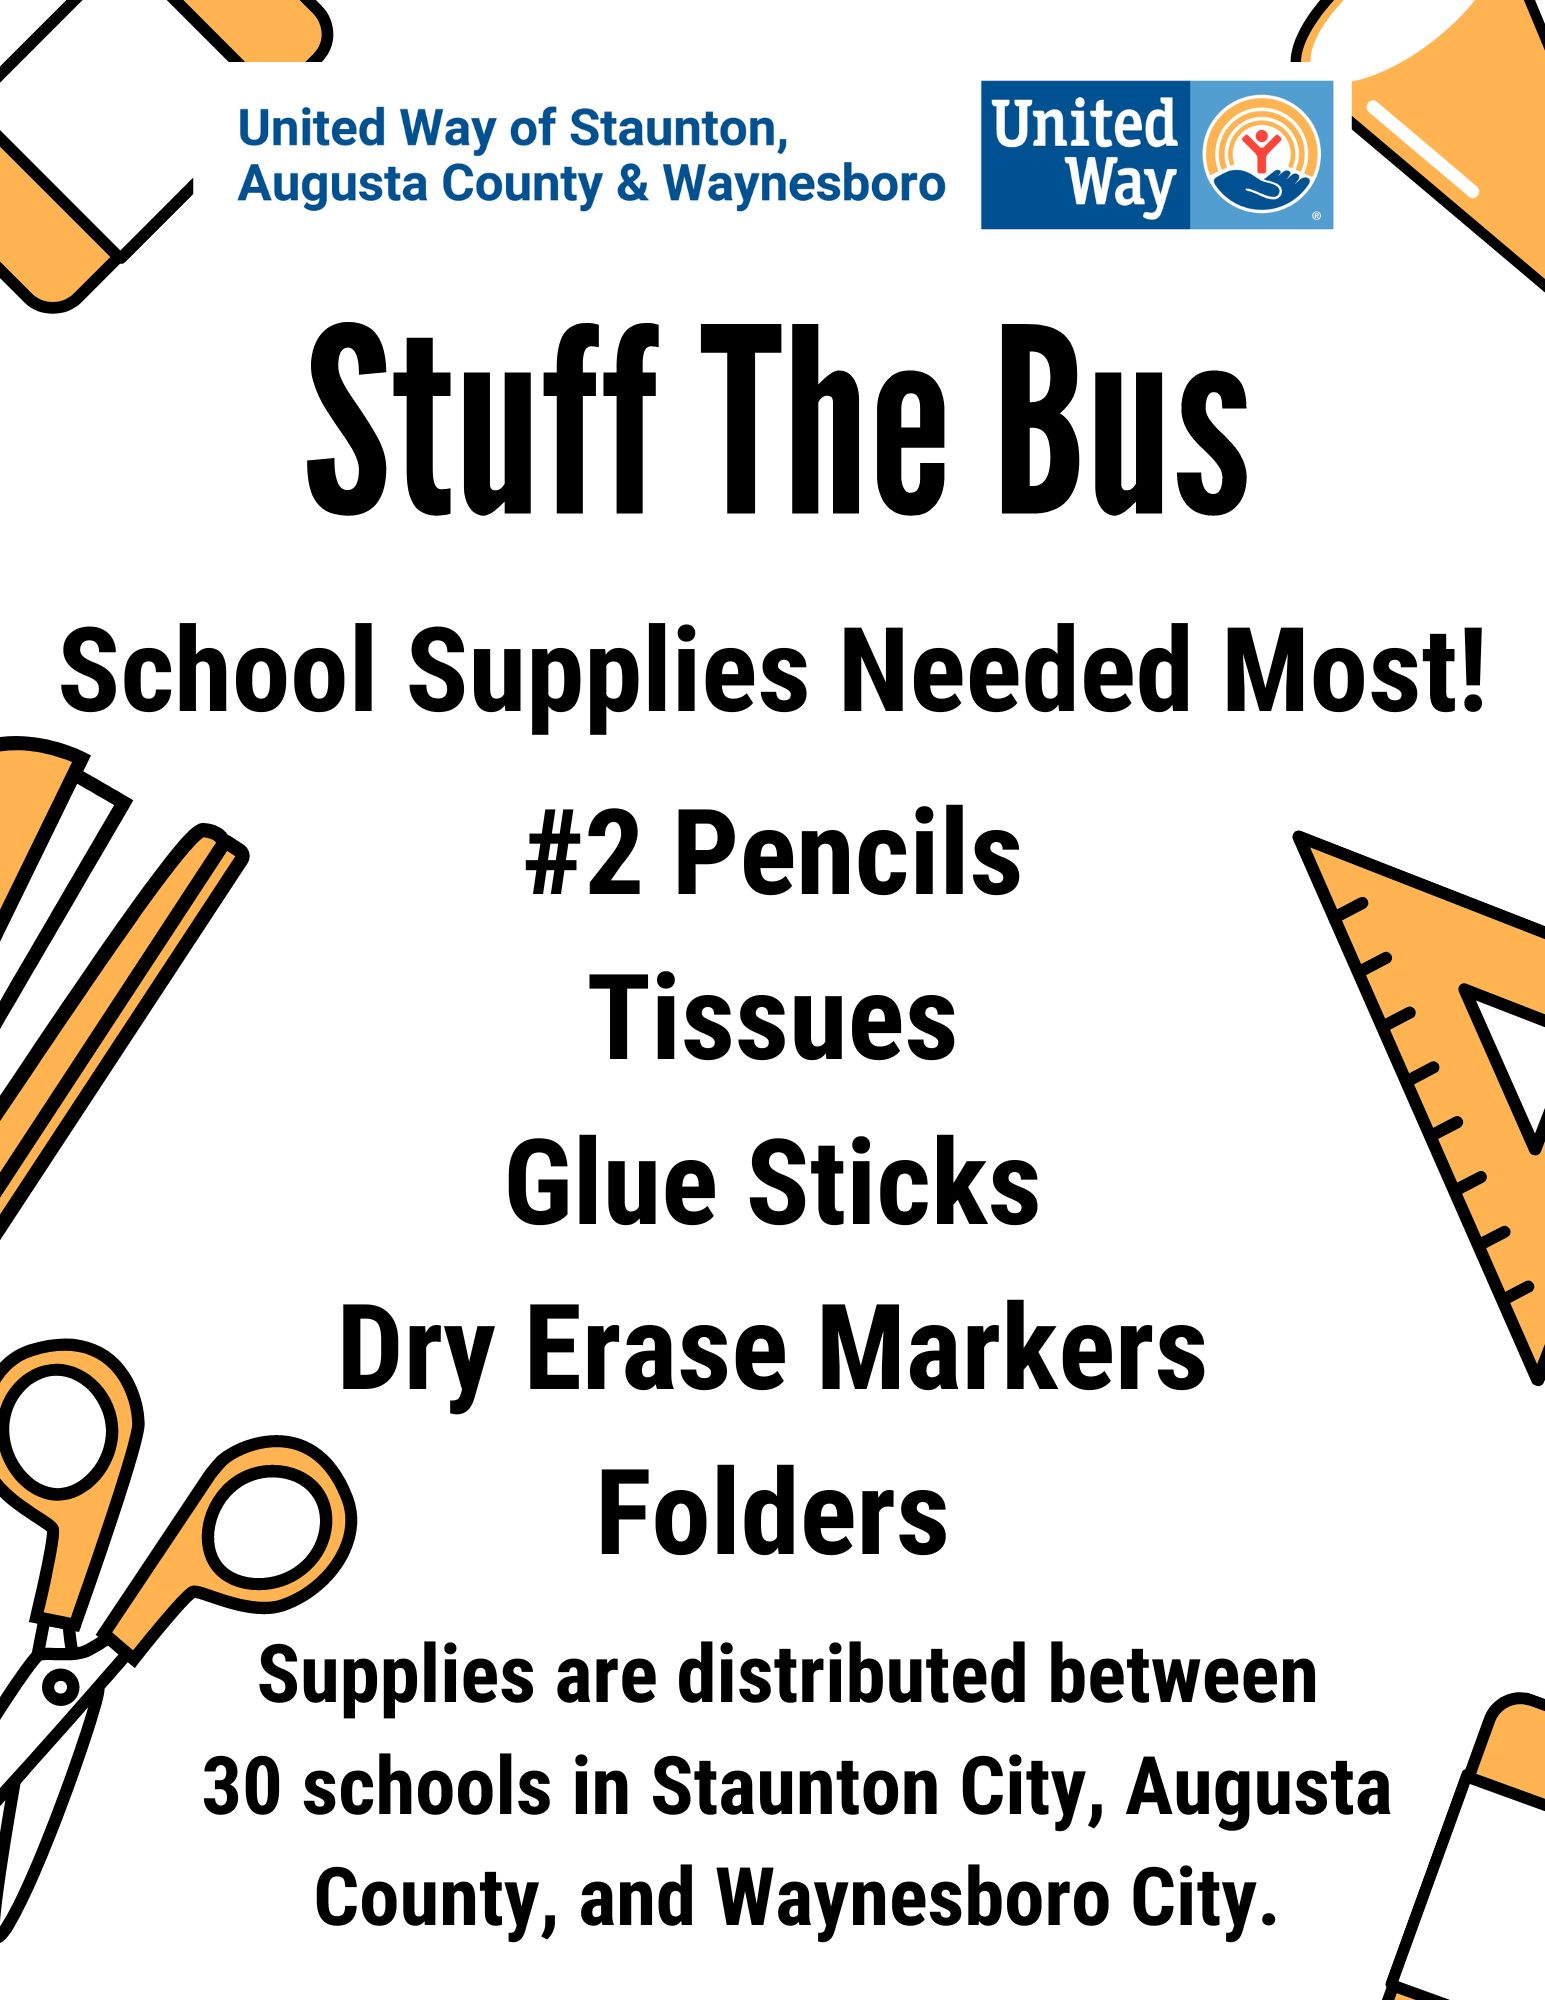 Most Needed School Supplies